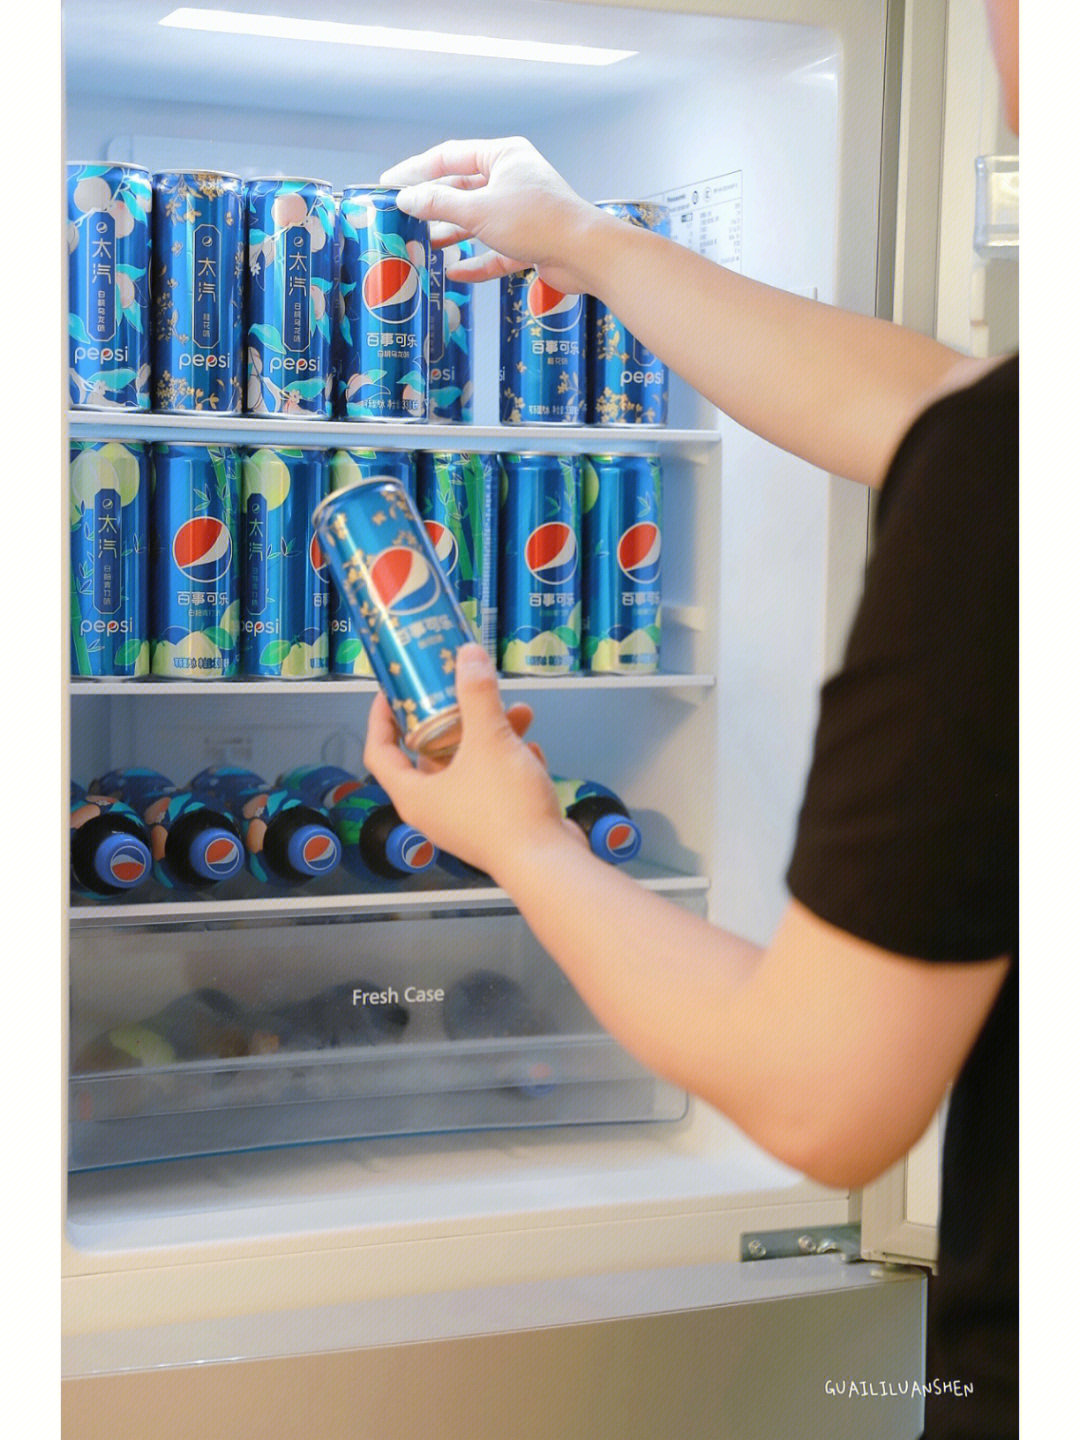 06每到夏天最快乐的事,就是囤超多的百事可乐,然后把家里的冰箱填满